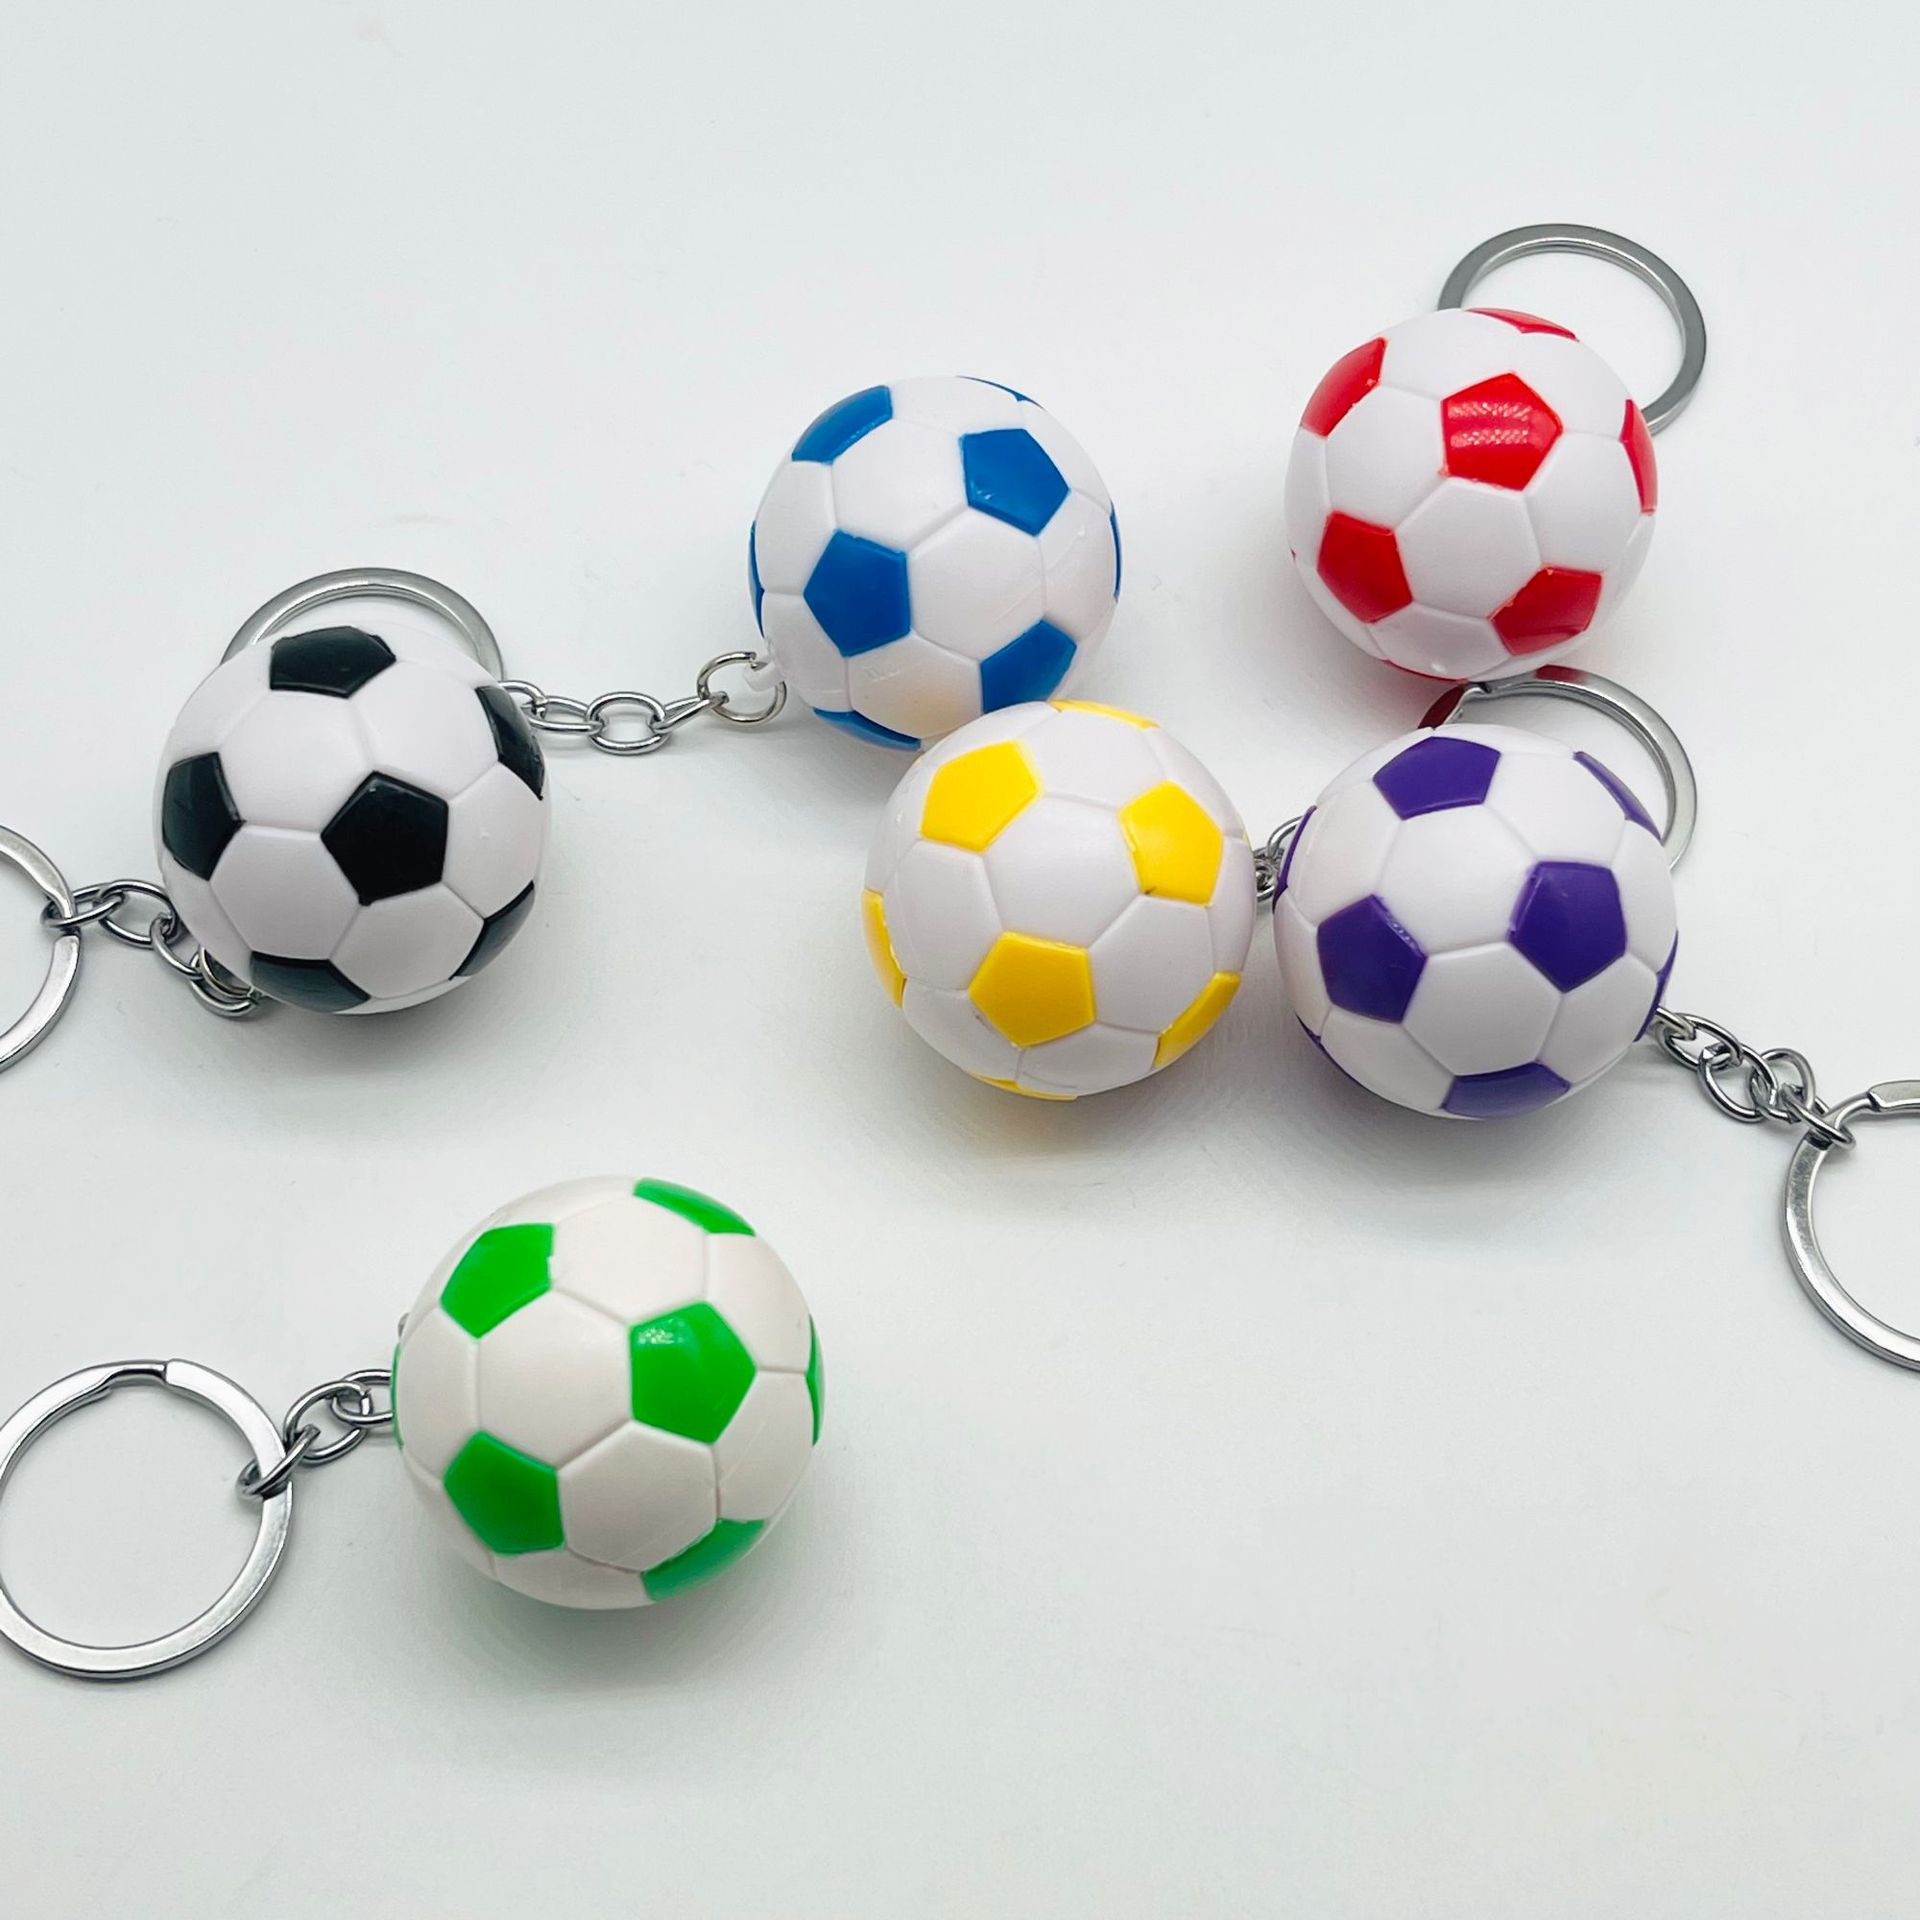 创意4cm足球钥匙扣世界杯周边礼品学生包挂件活动赠品现货批发